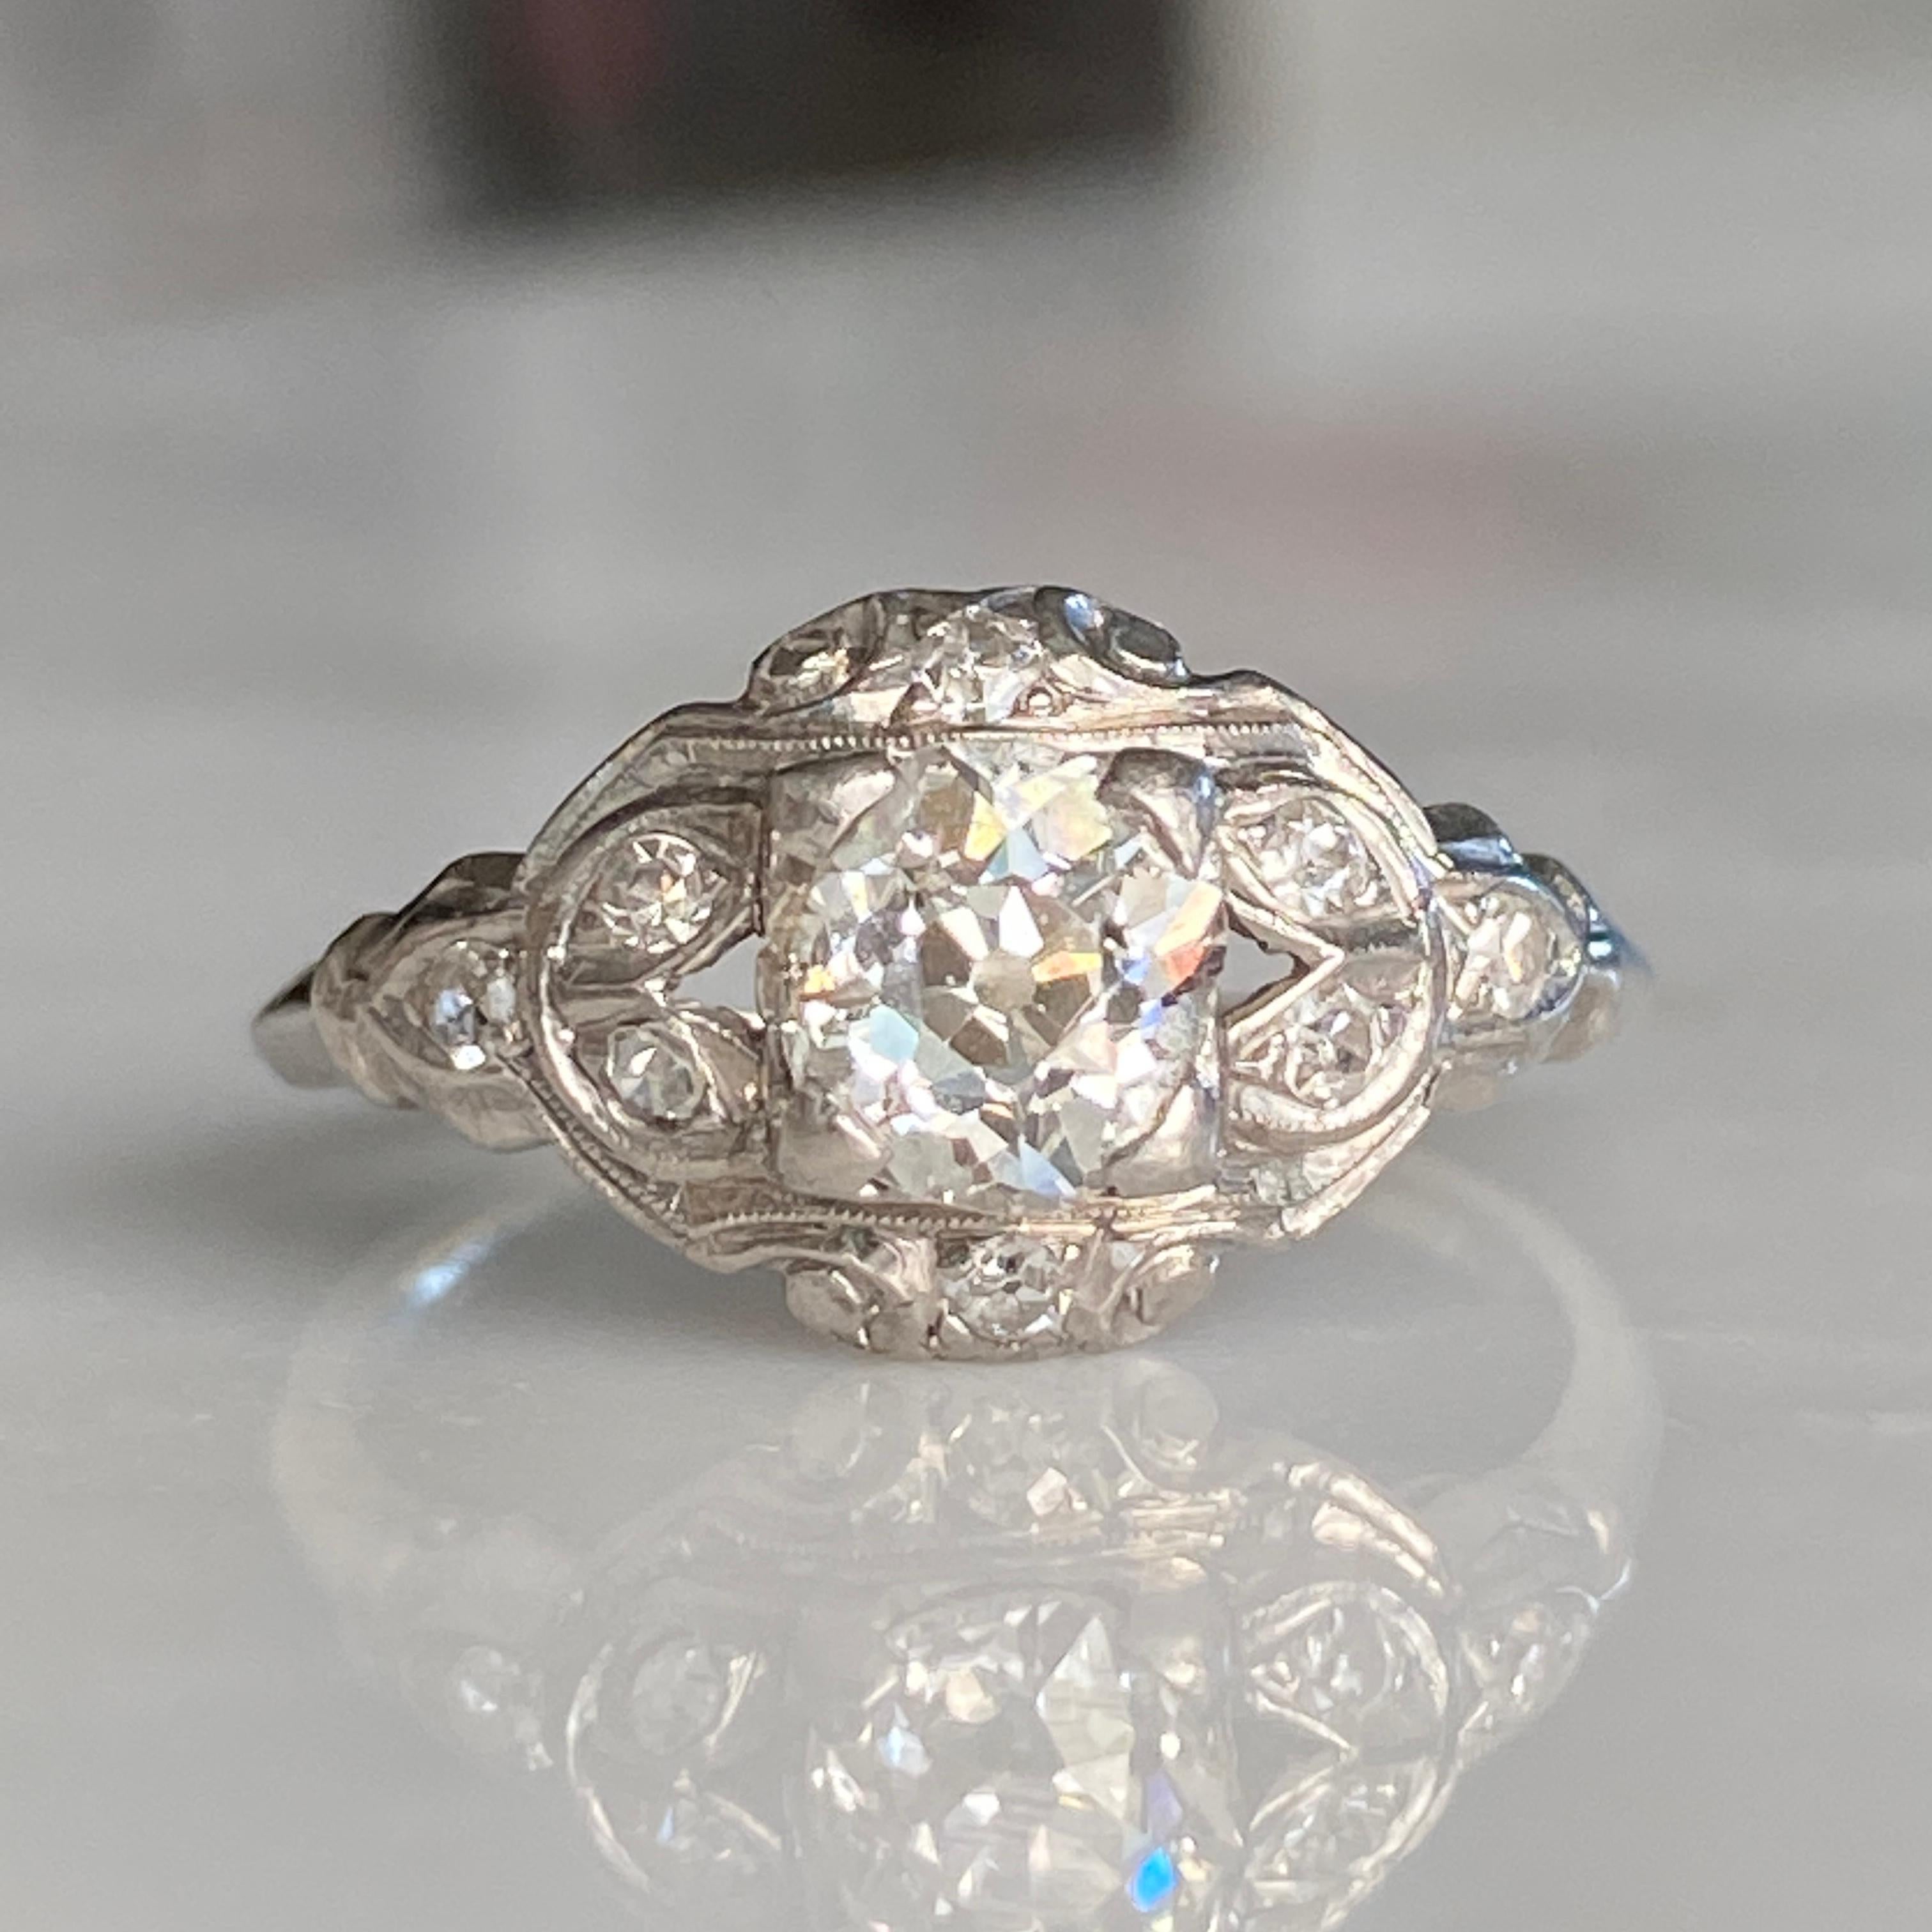 Einzelheiten:
Süßer Art Deco Platin Verlobungsring mit .81ct Minenschliff Diamant. Das wäre ein schöner Verlobungsring! Dieser Ring wird mit einem Wertgutachten geliefert. Sie werden nicht enttäuscht sein! Bitte stellen Sie alle notwendigen Fragen,